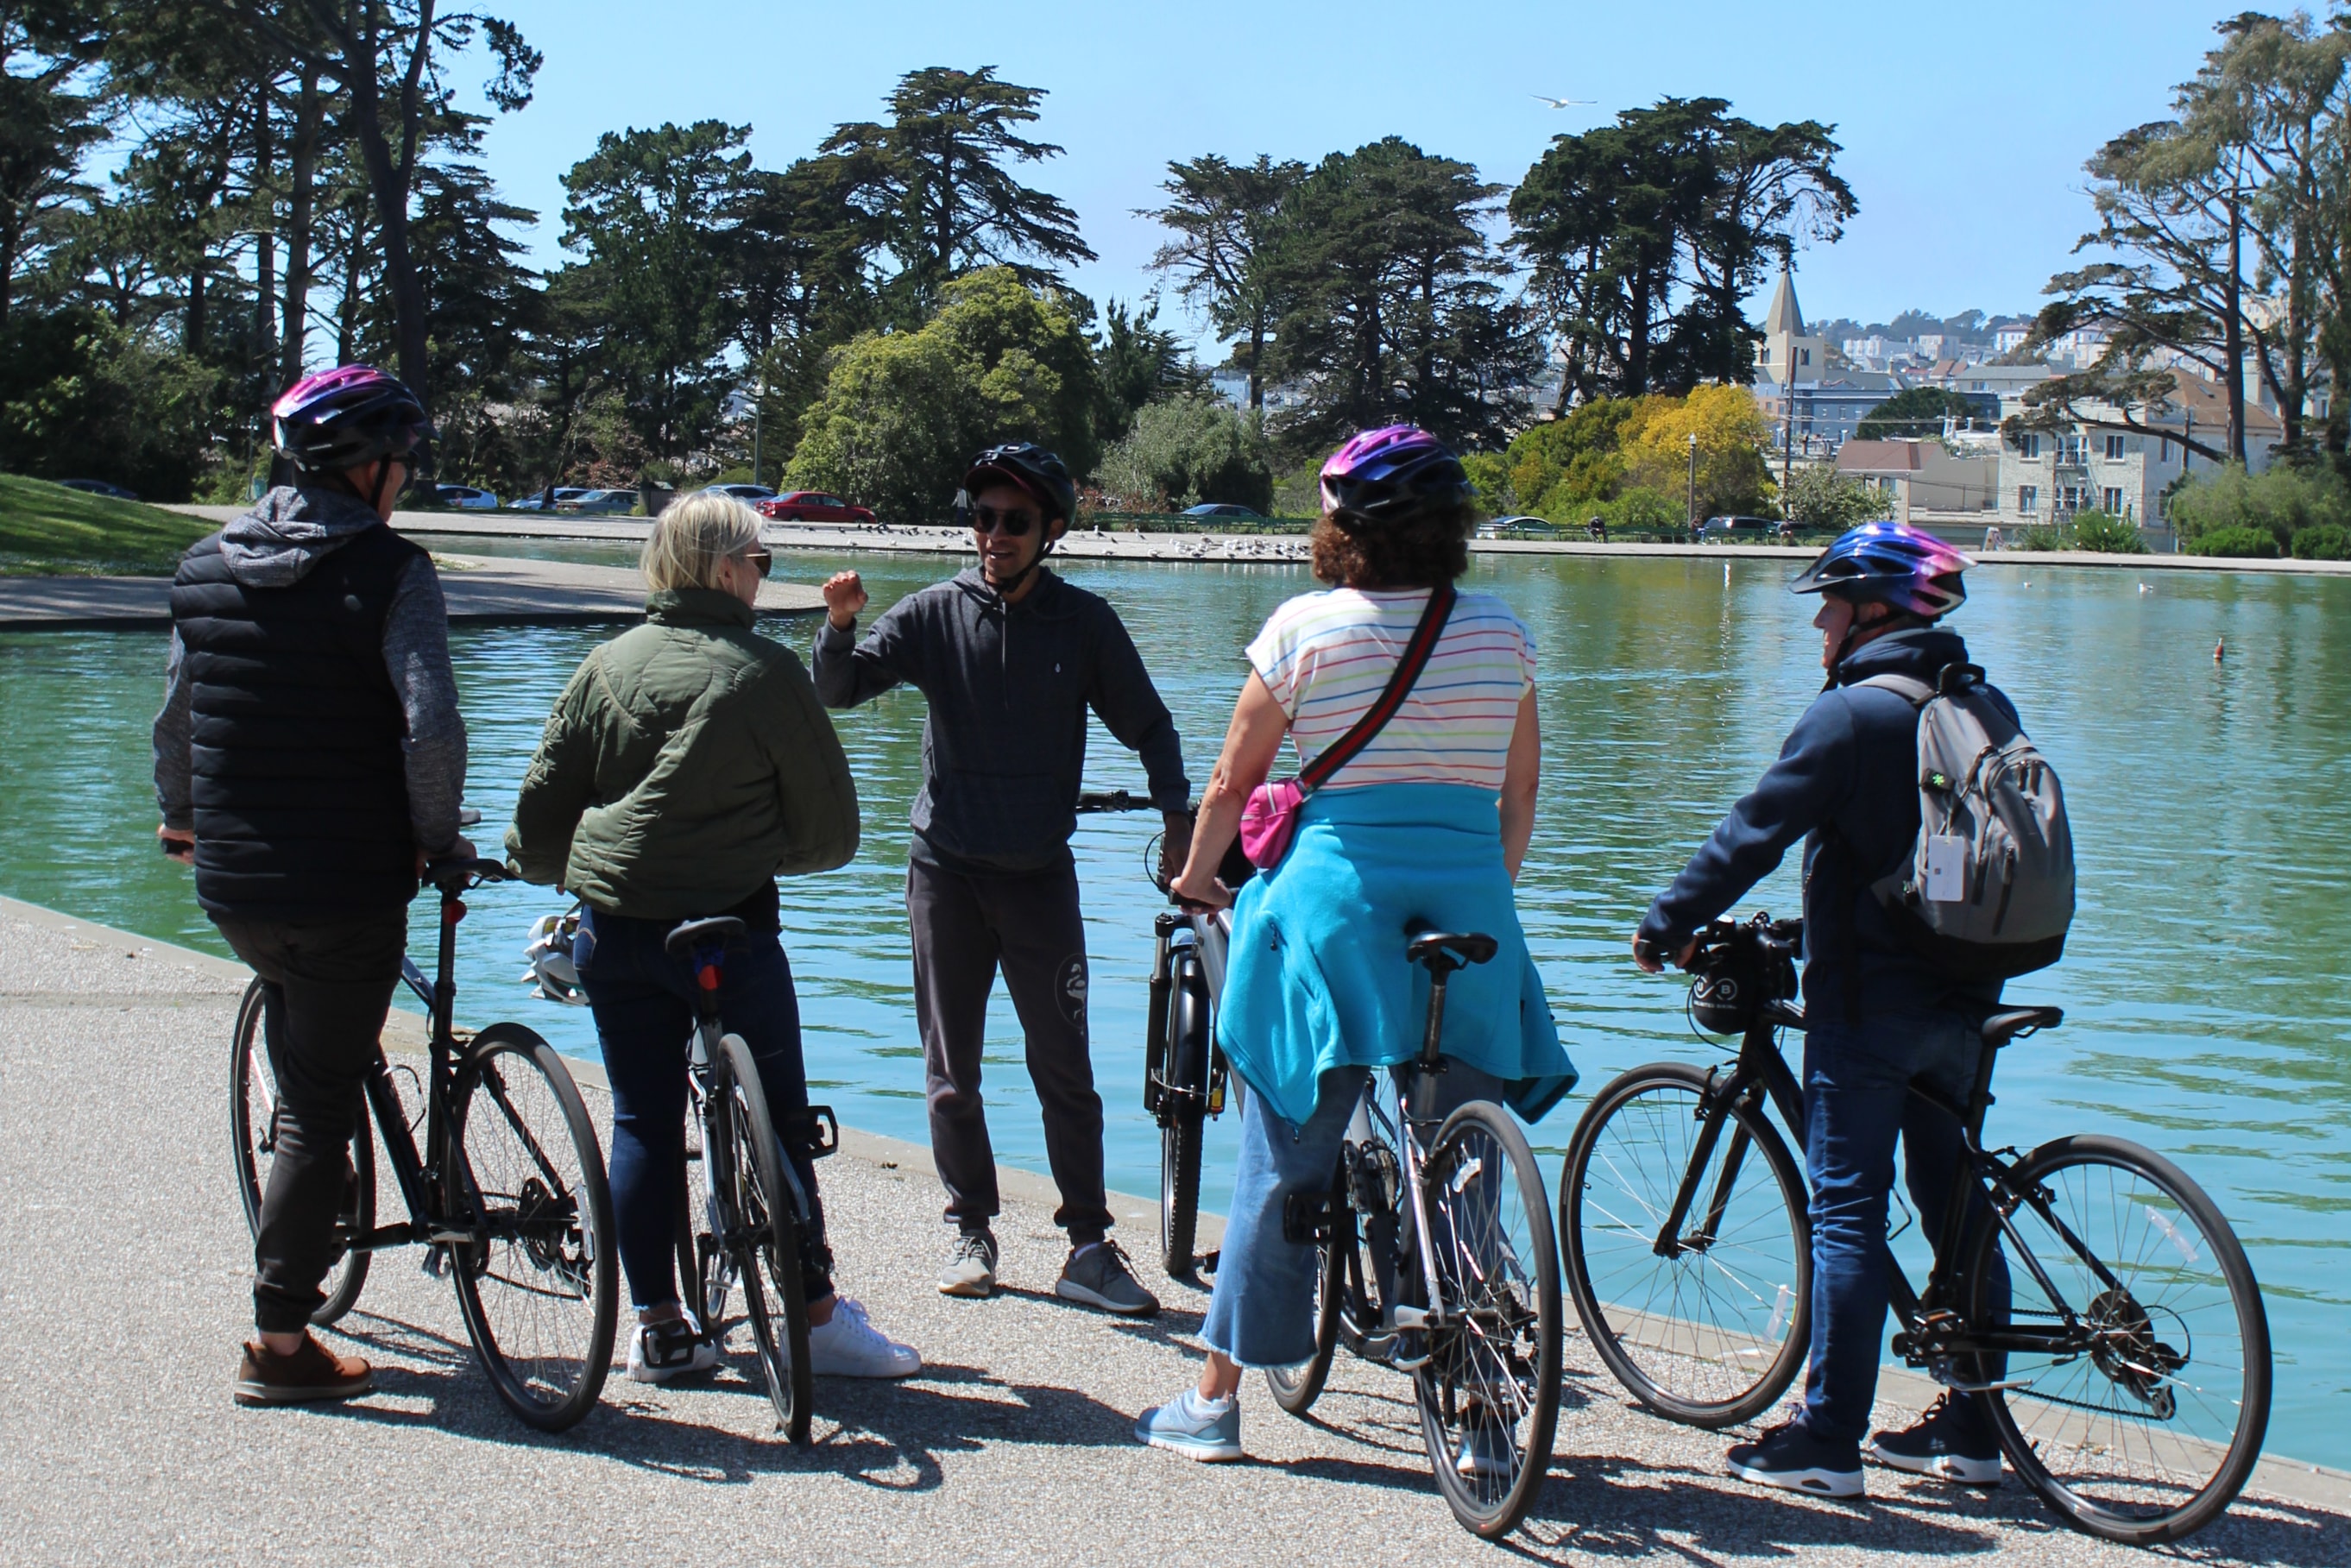 舊金山金門公園精華景點自行車之旅